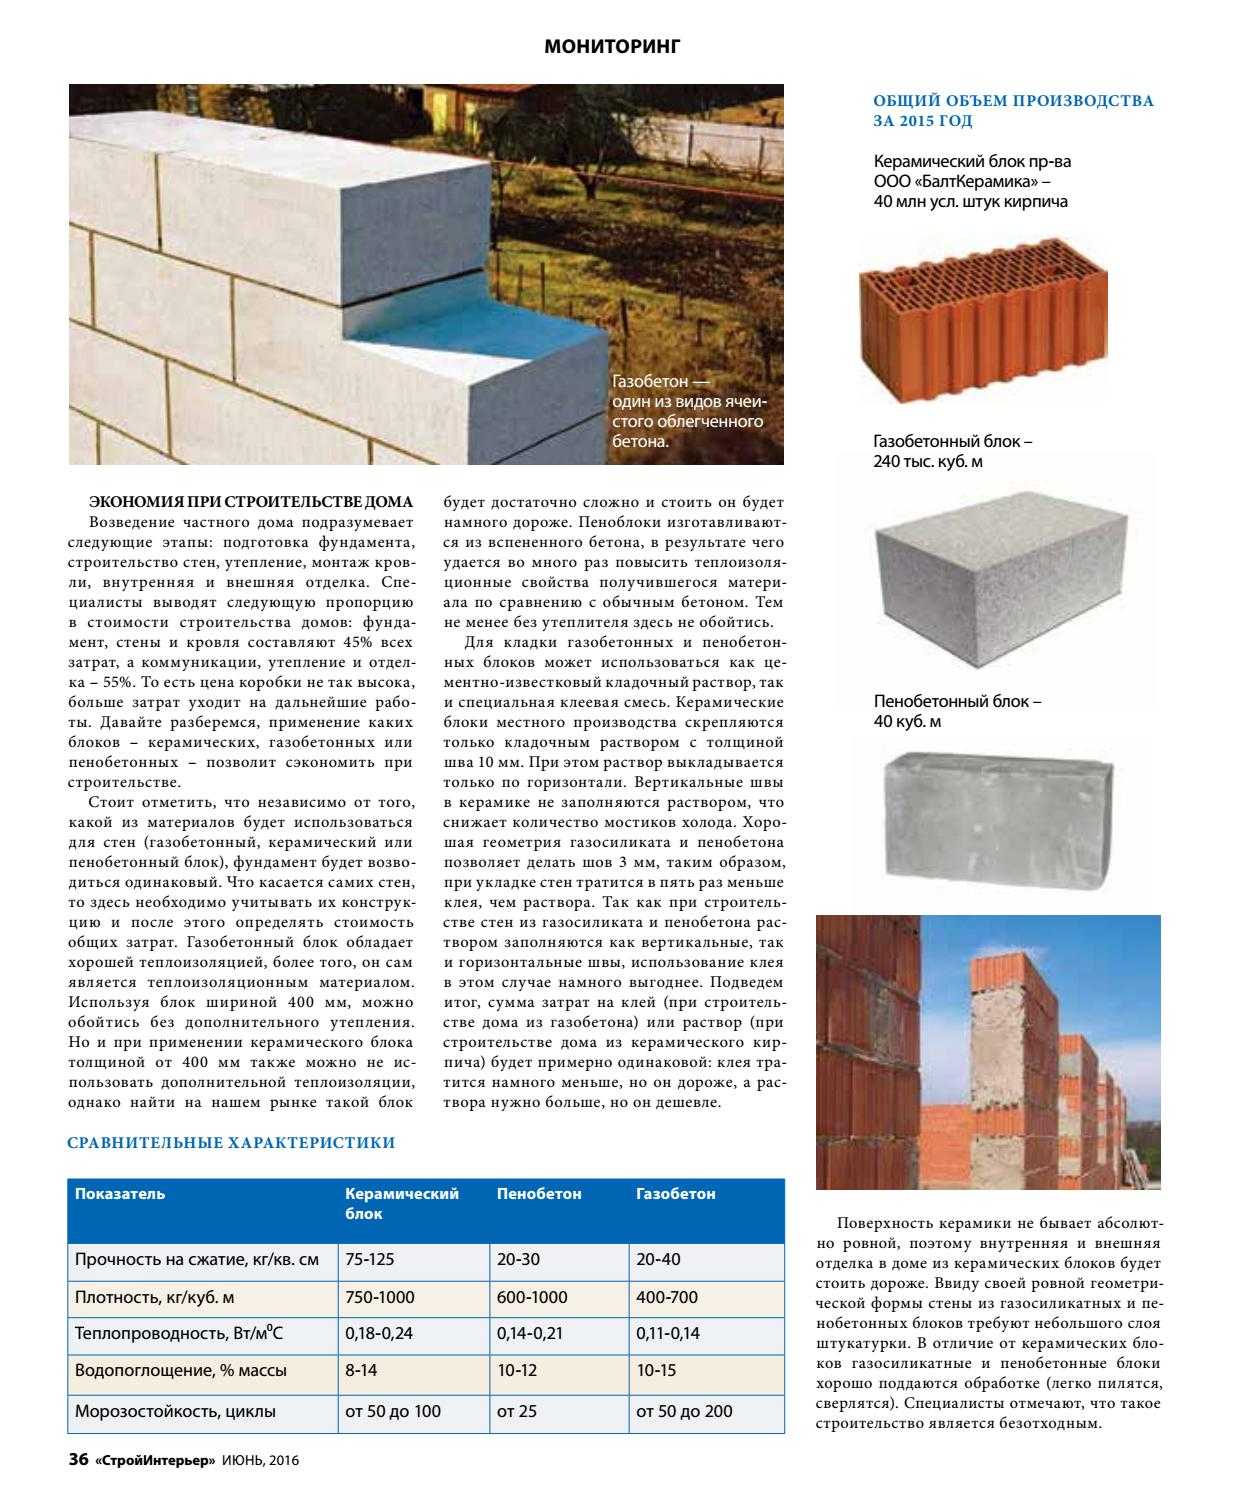 Легкие бетоны: виды, классификация, свойства, использование